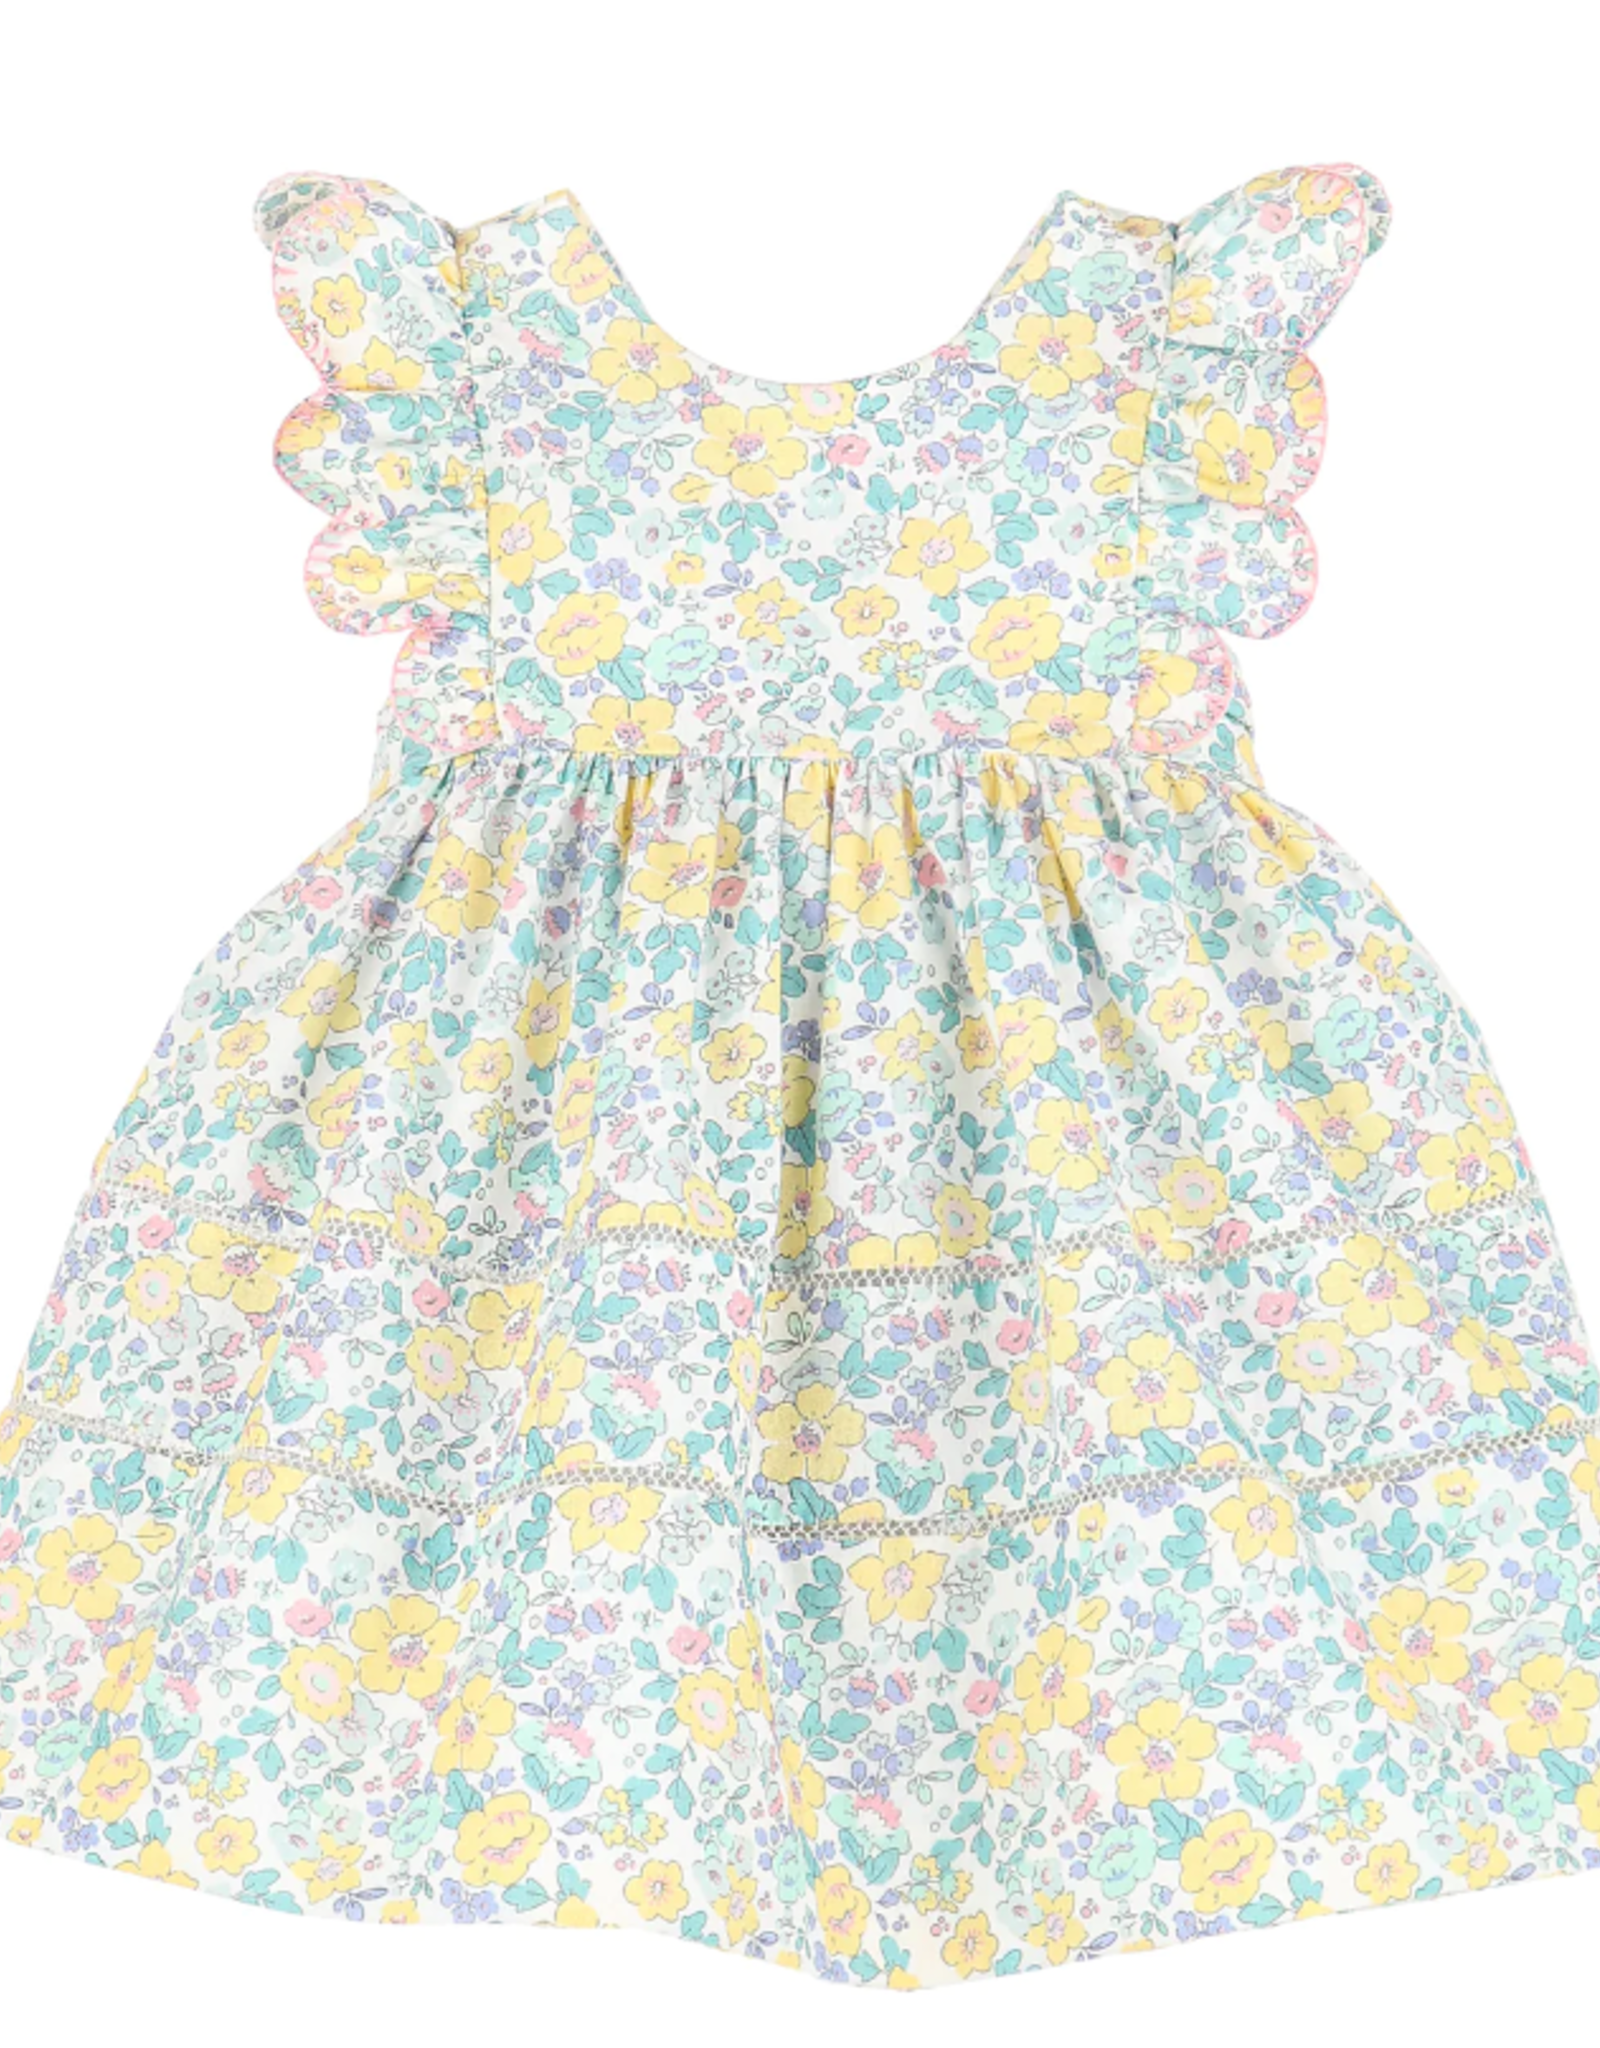 Sophie & Lucas Sunny Spring Dress, Floral Print